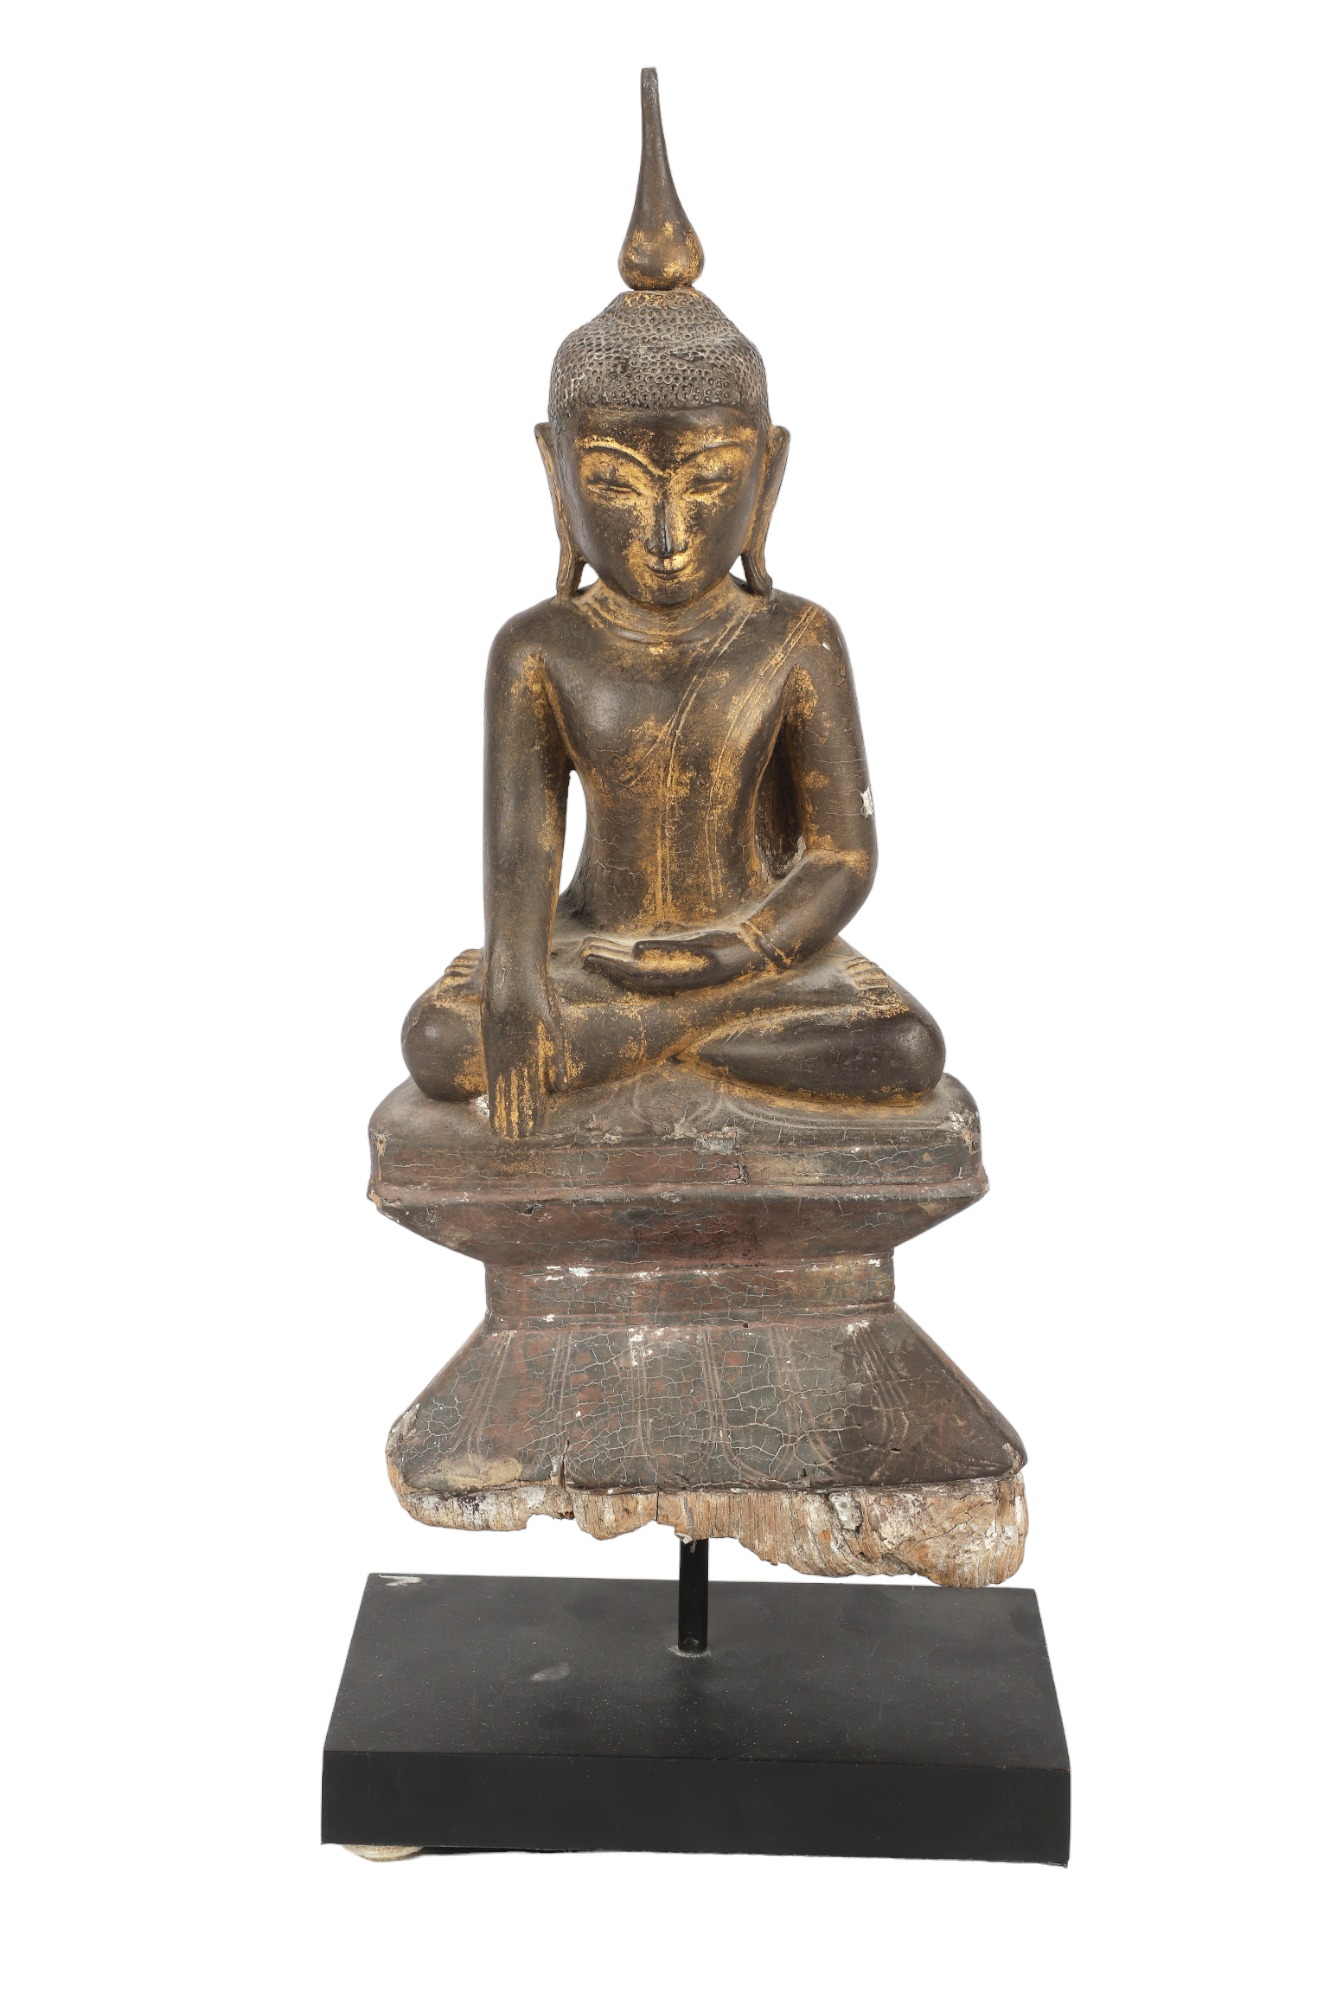 Carved wood Thai Buddha figure